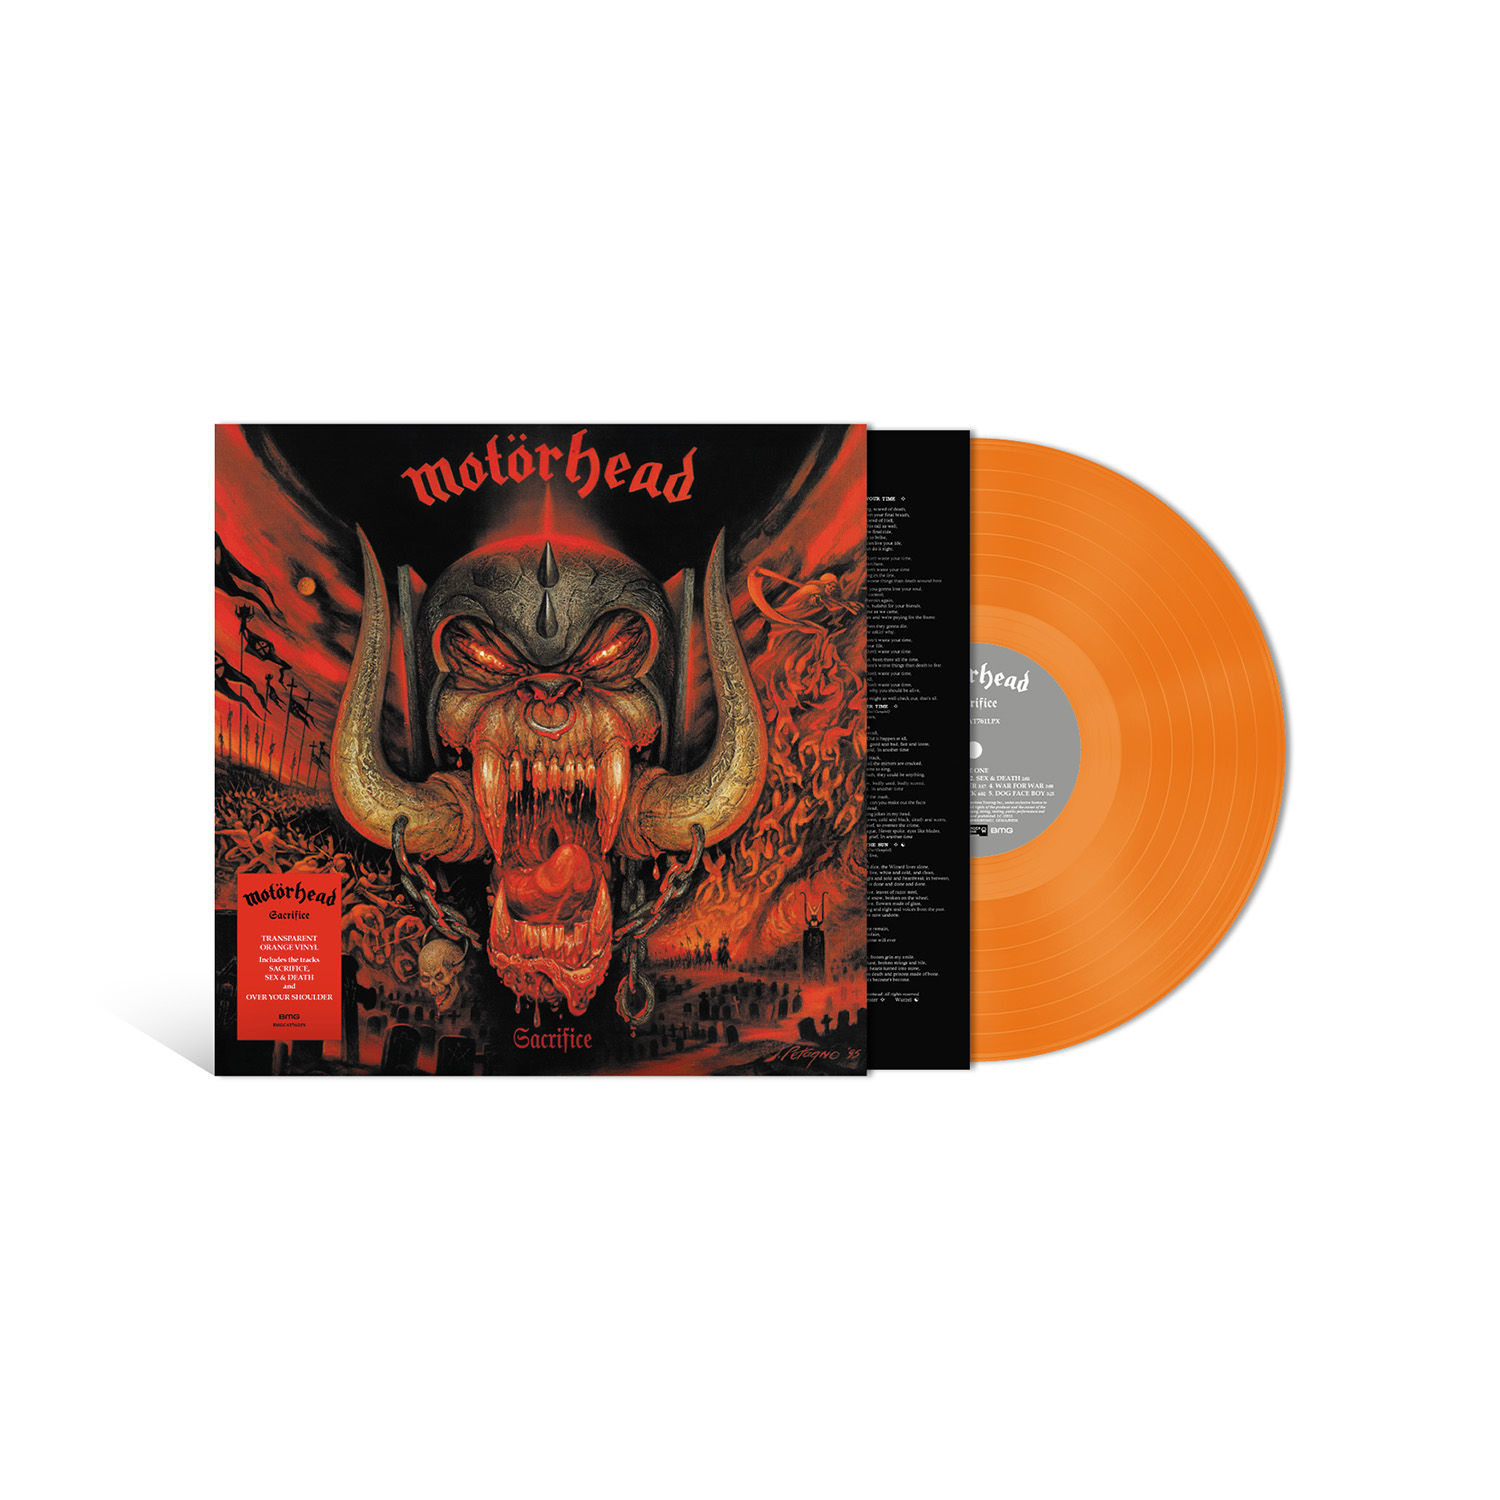 Motörhead - Sacrifice (Orange Vinyl)